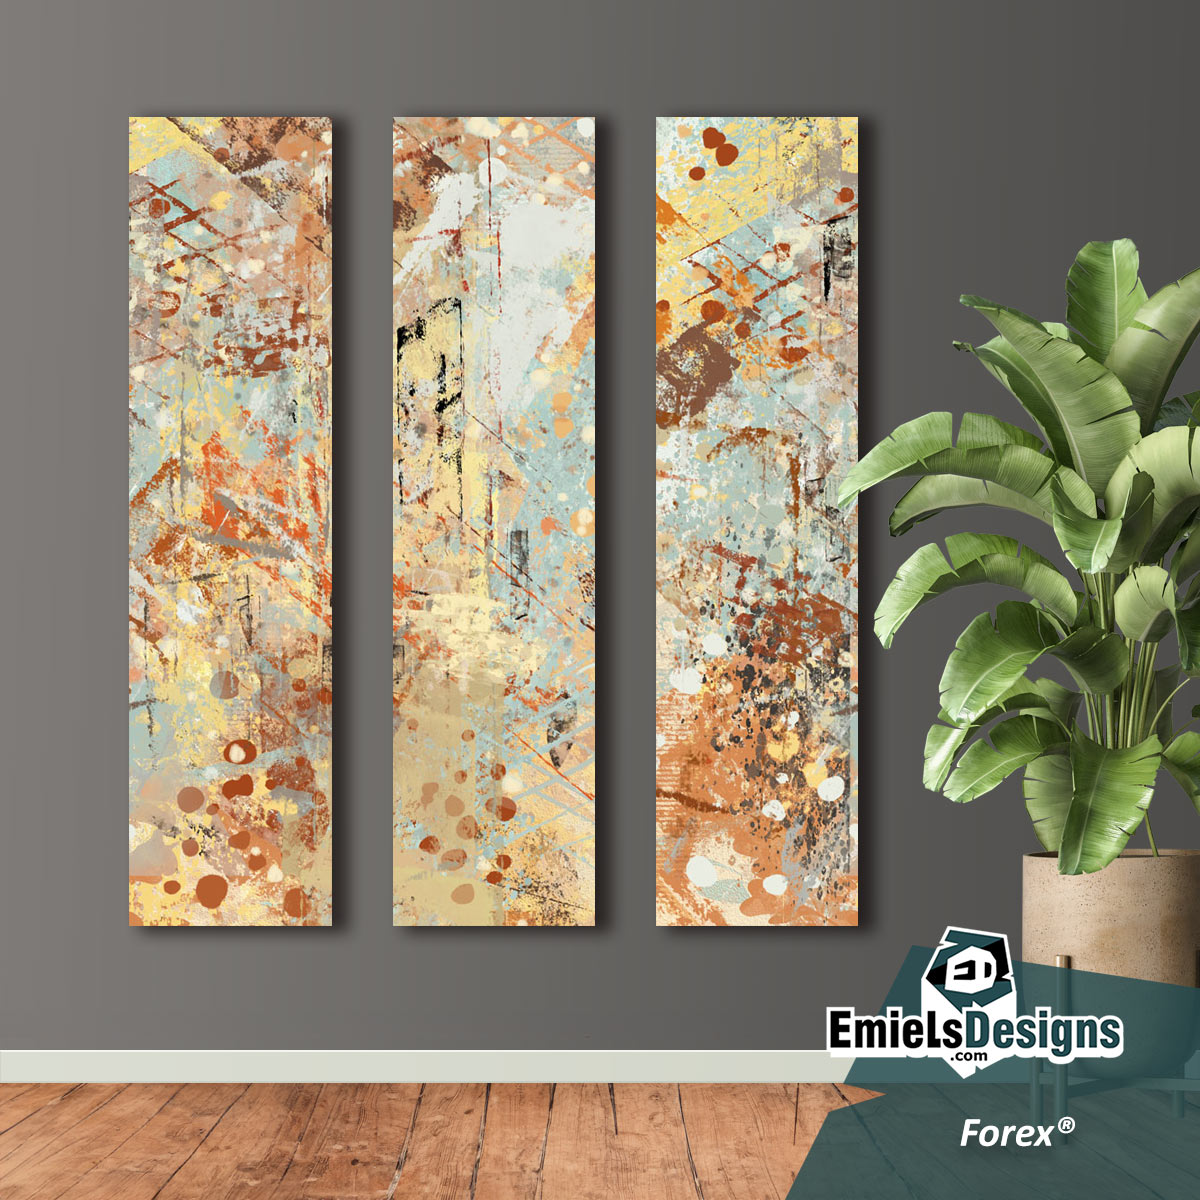 Drieluik kleurig abstract - langwerpige panelen